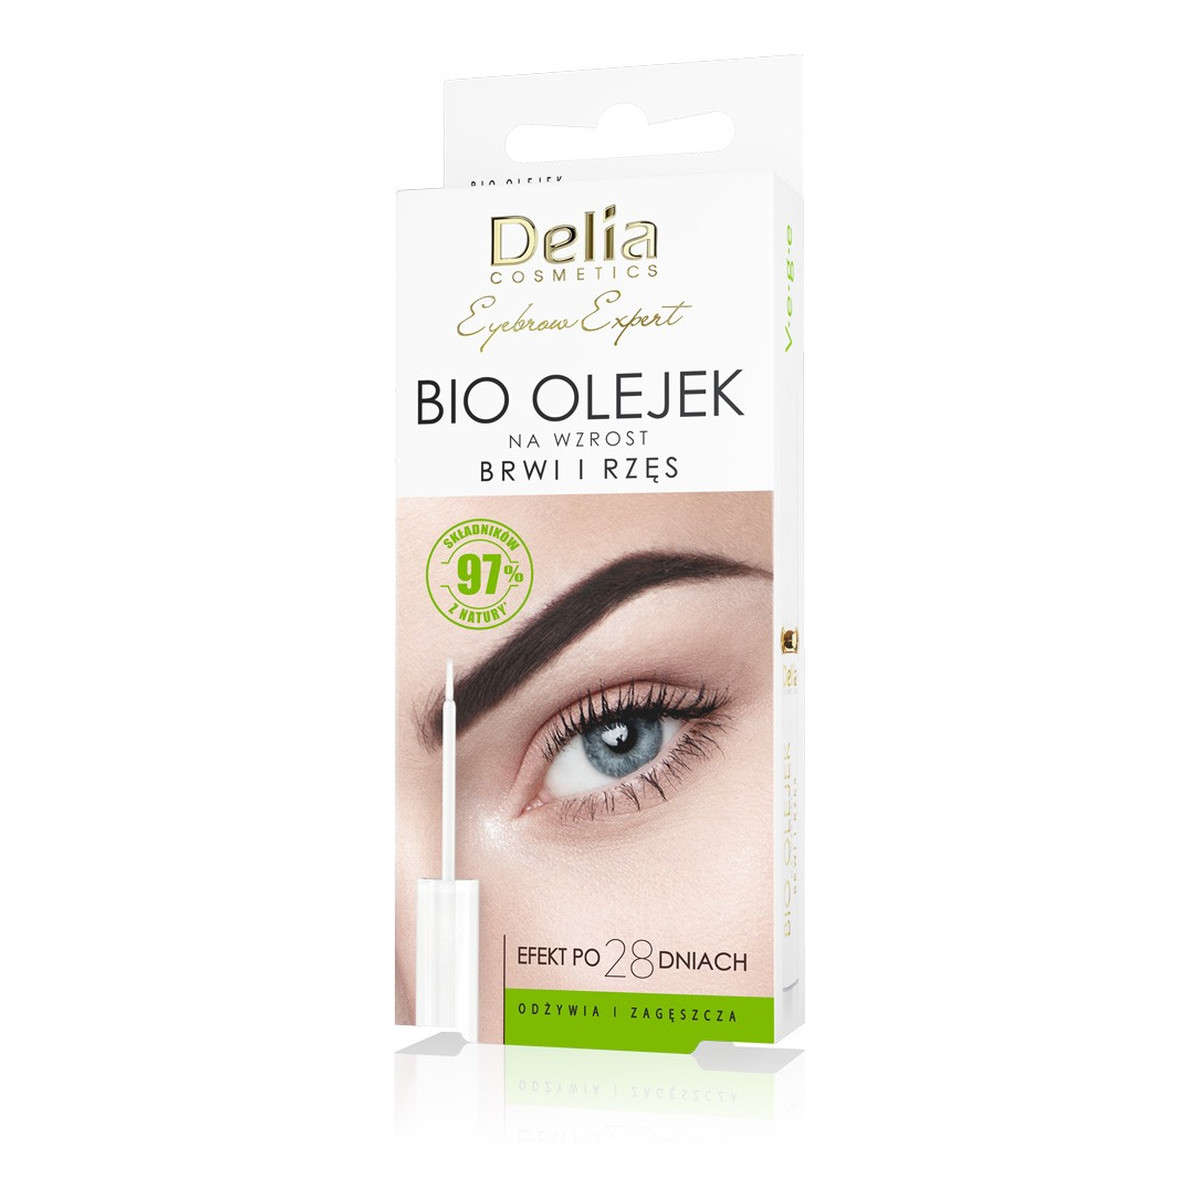 Delia Eyebrow Expert Bio Olejek na wzrost brwi i rzęs